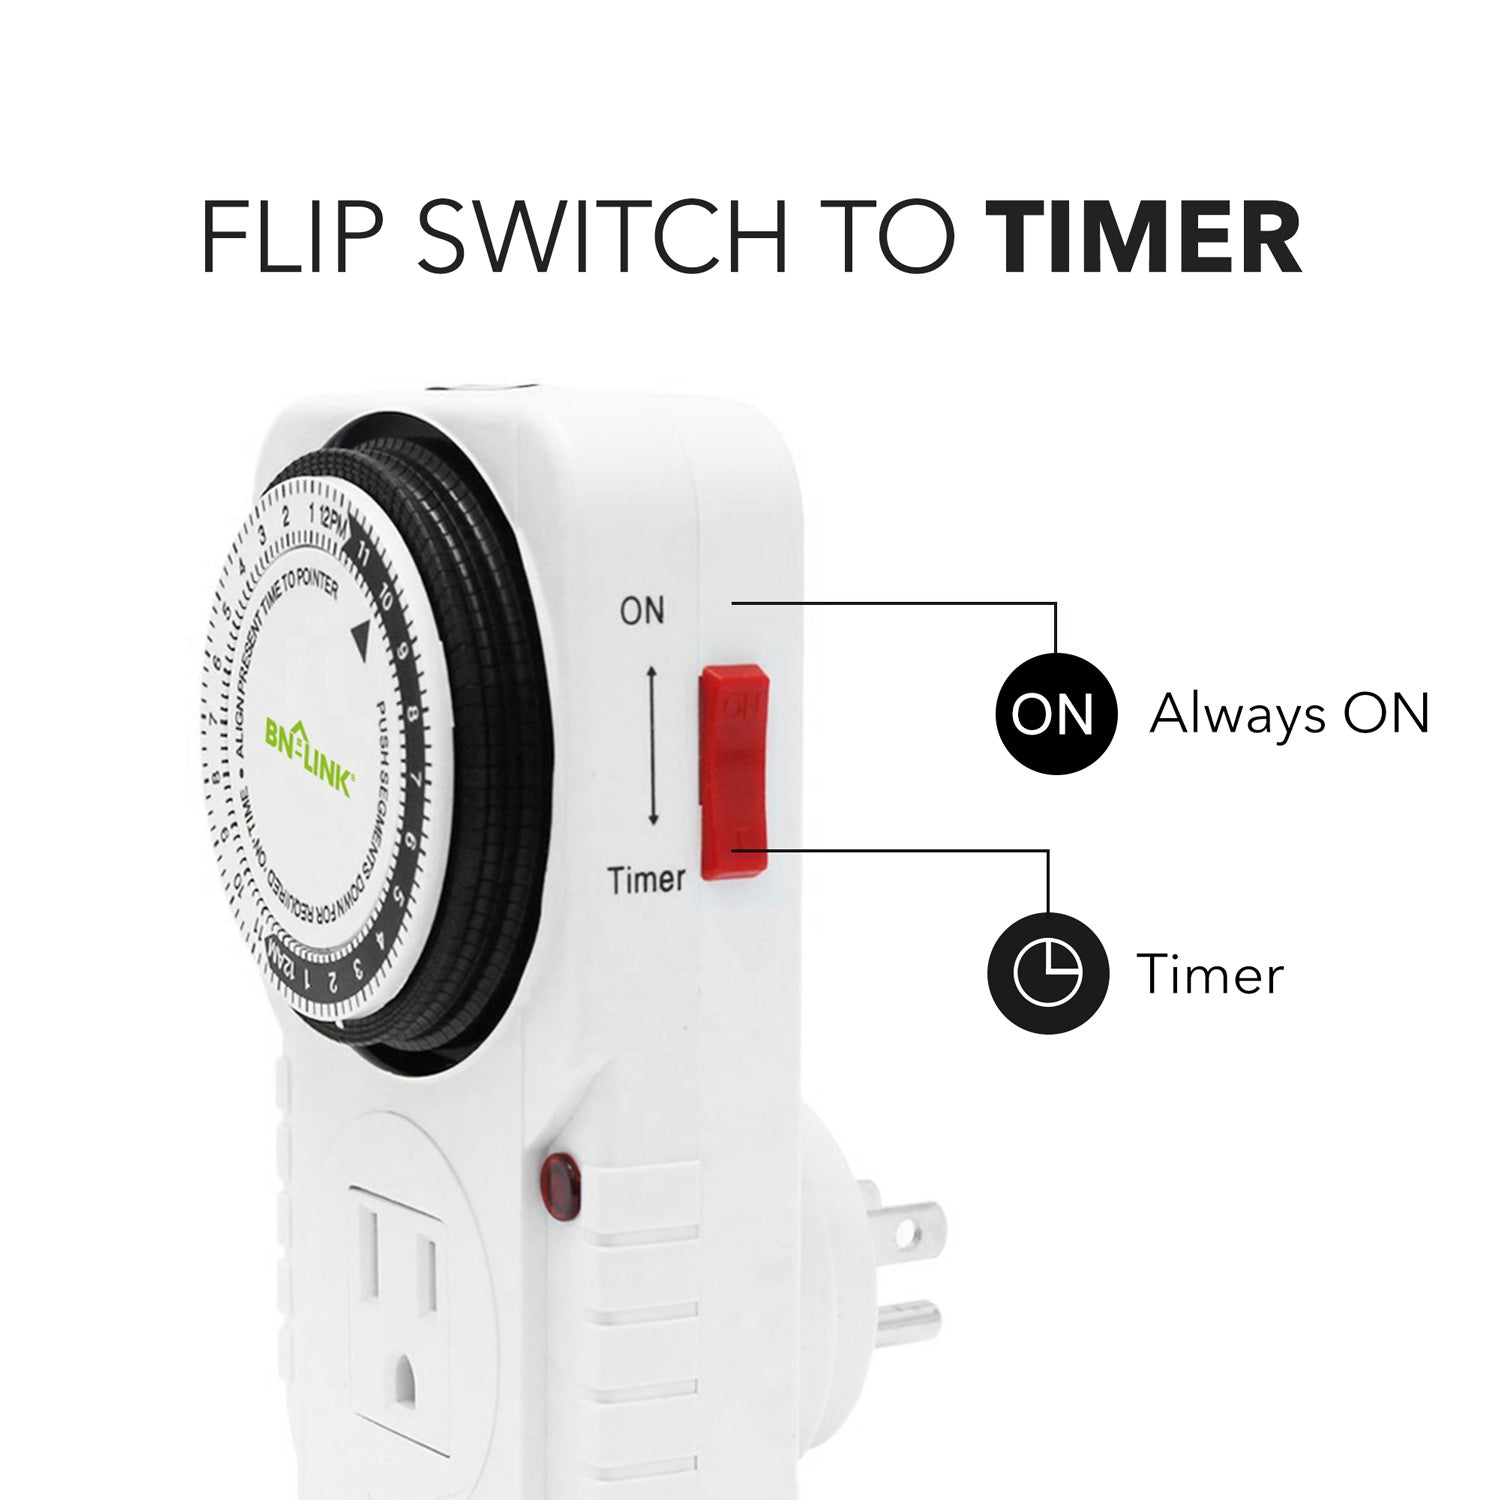 TESSAN Digital Timer Outlet, Light Timer Plug Support 24 Hour and